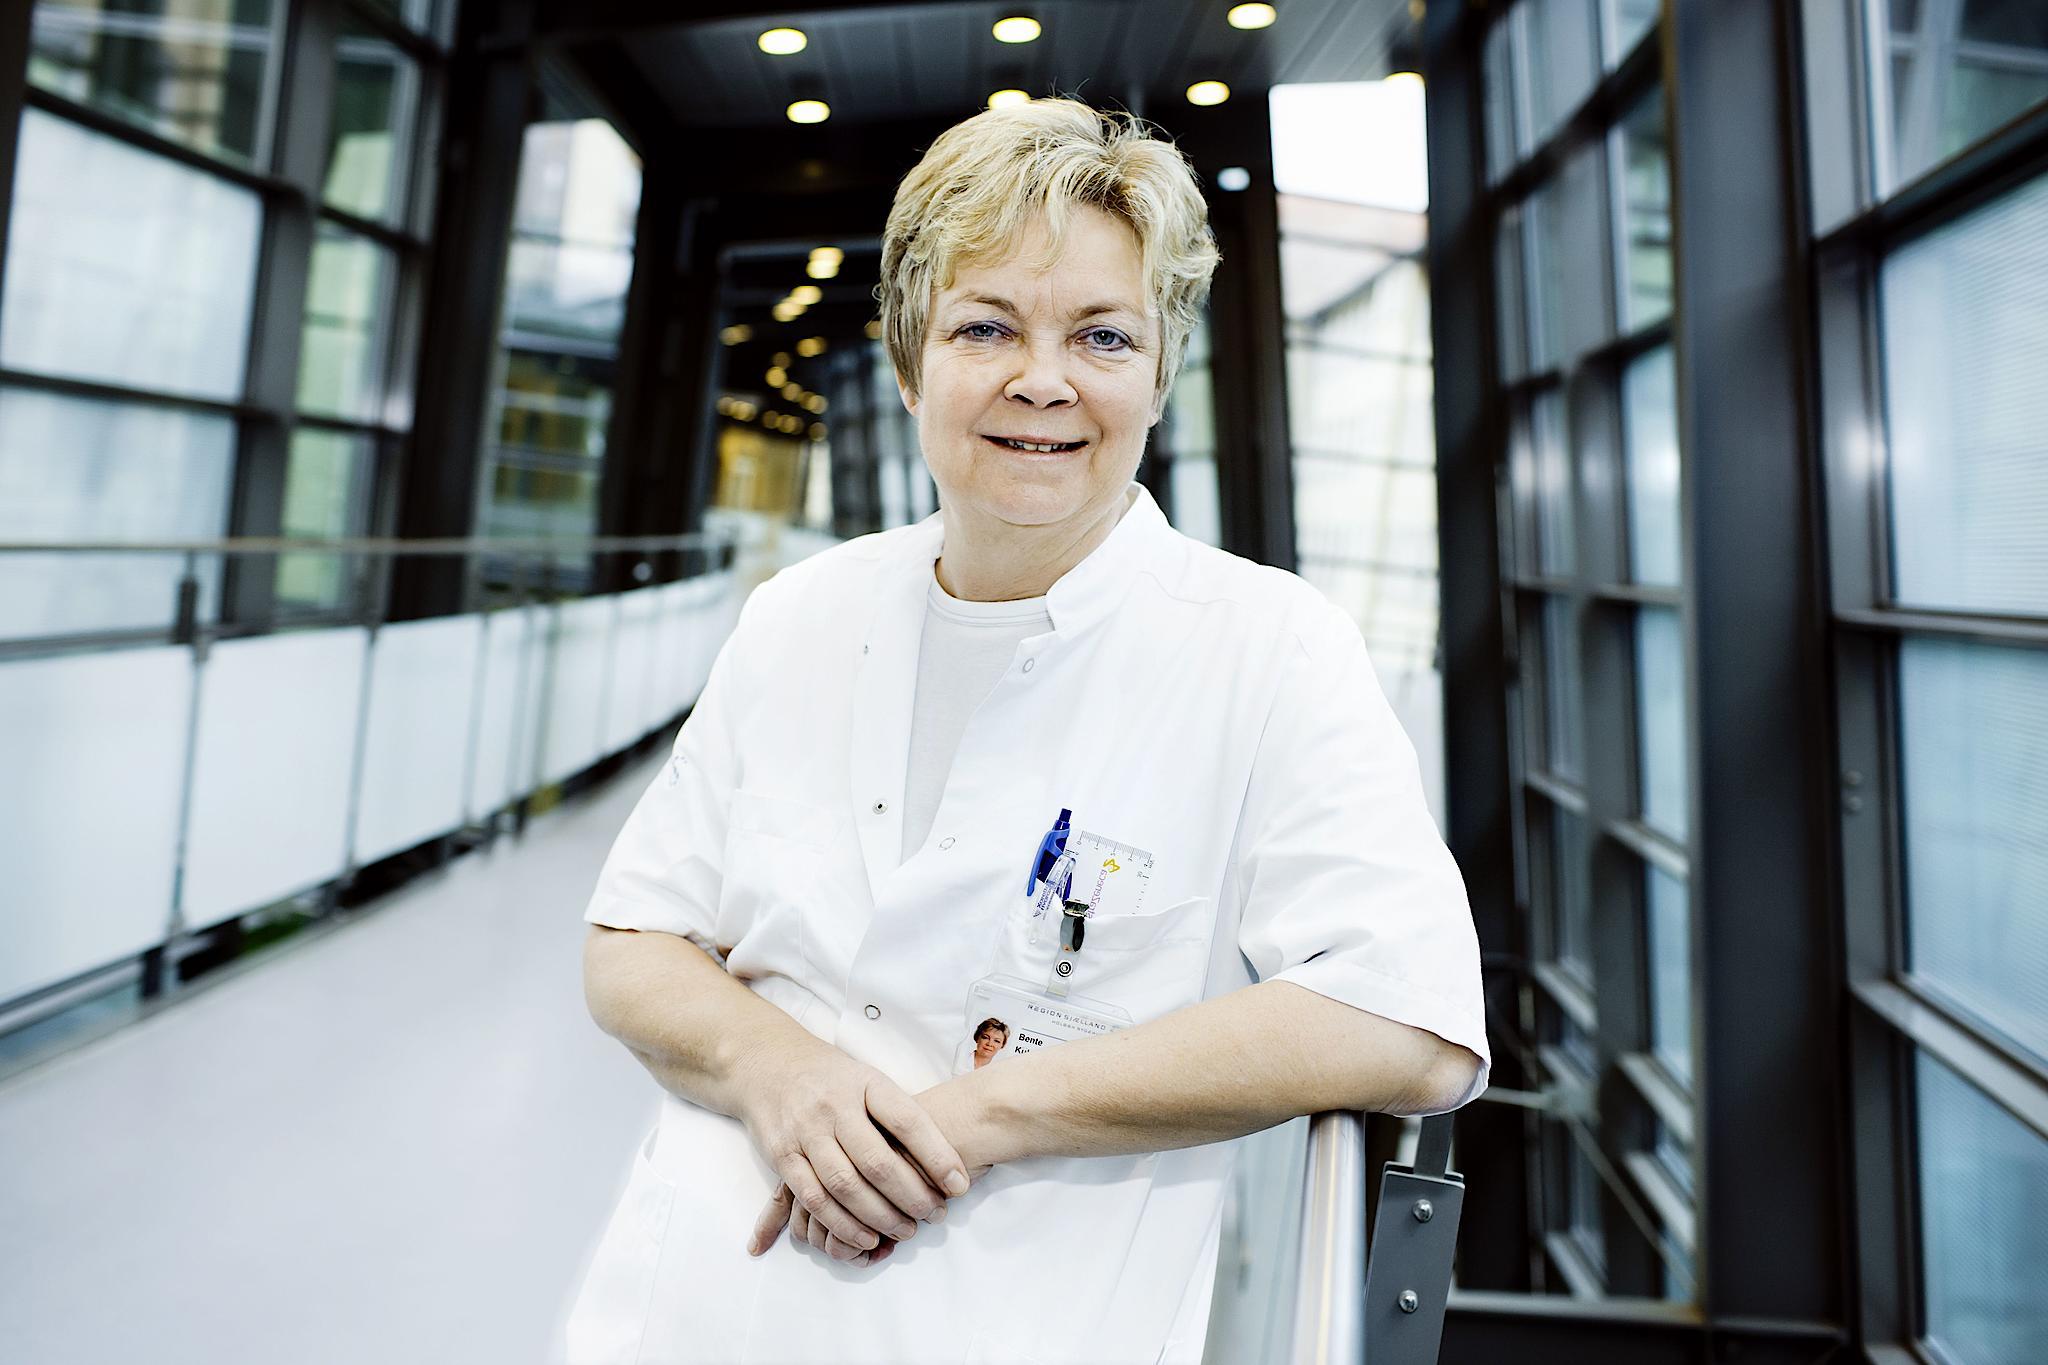 Specialeansvarlig overlæge på Holbæk Sygehus' hjerteafdeling Bente Kühn Madsen har ransaget sin måde at være læge på og synes ikke, at hun forskelsbehandler. Foto: Claus Boesen.